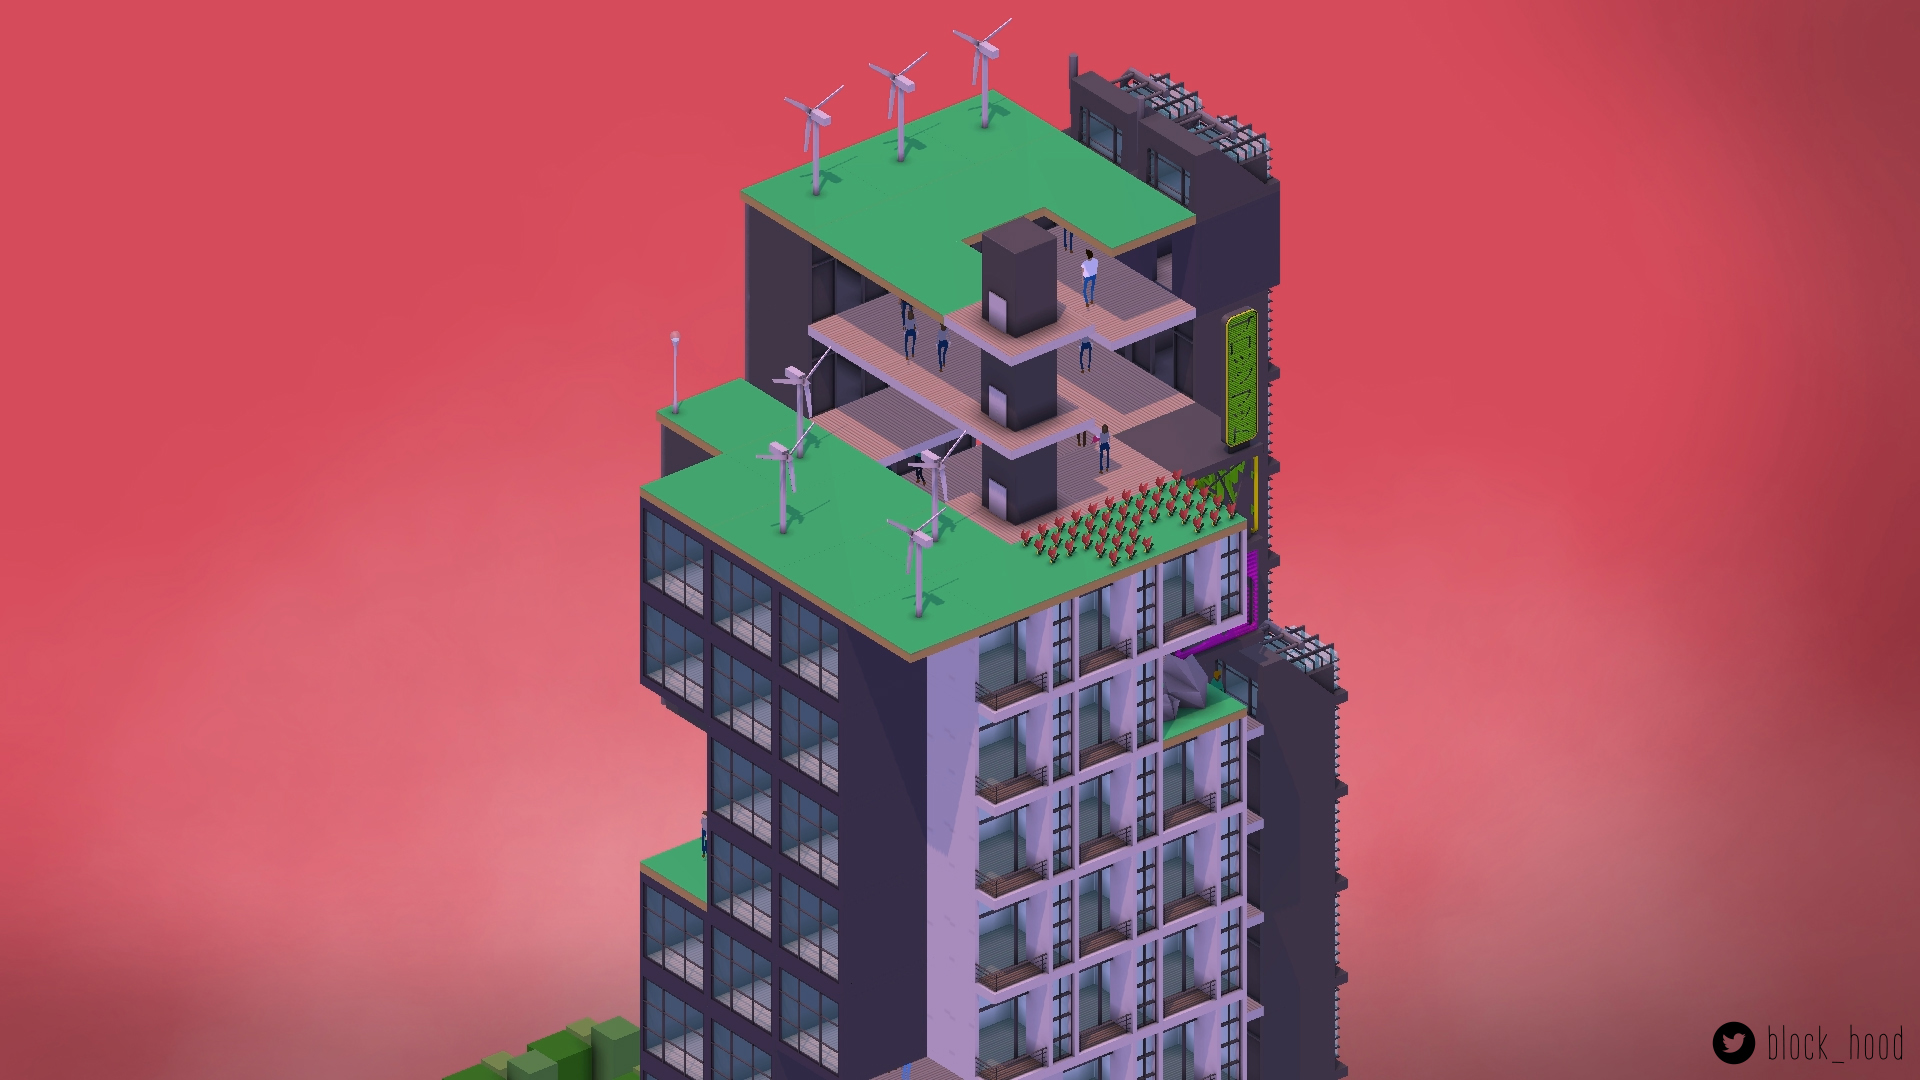 Block'hood: Simulador de cidades ecológicas é lançado na